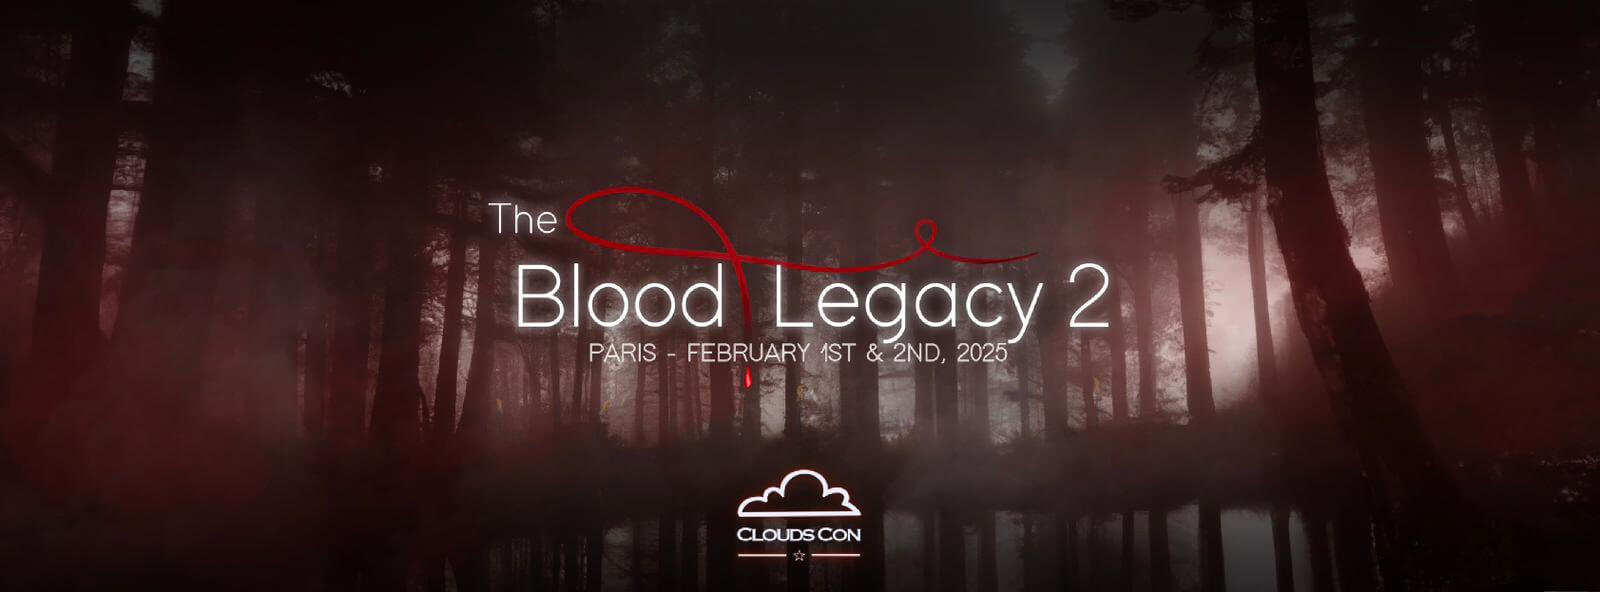 Une nouvelle convention The Vampire Diaries prévue à Paris en 2025